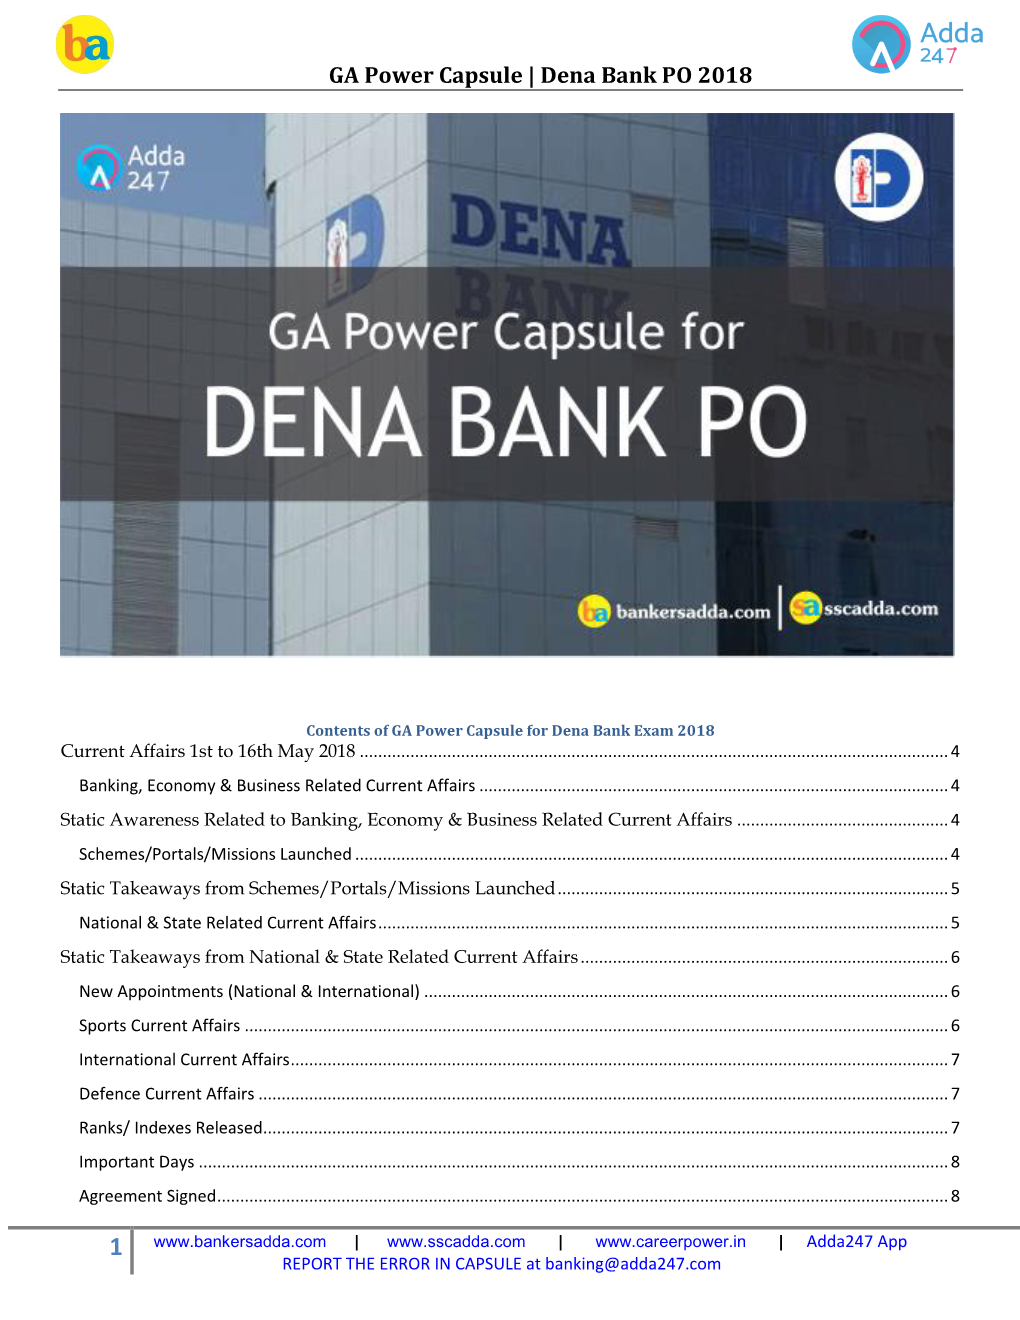 Dena Bank PO 2018